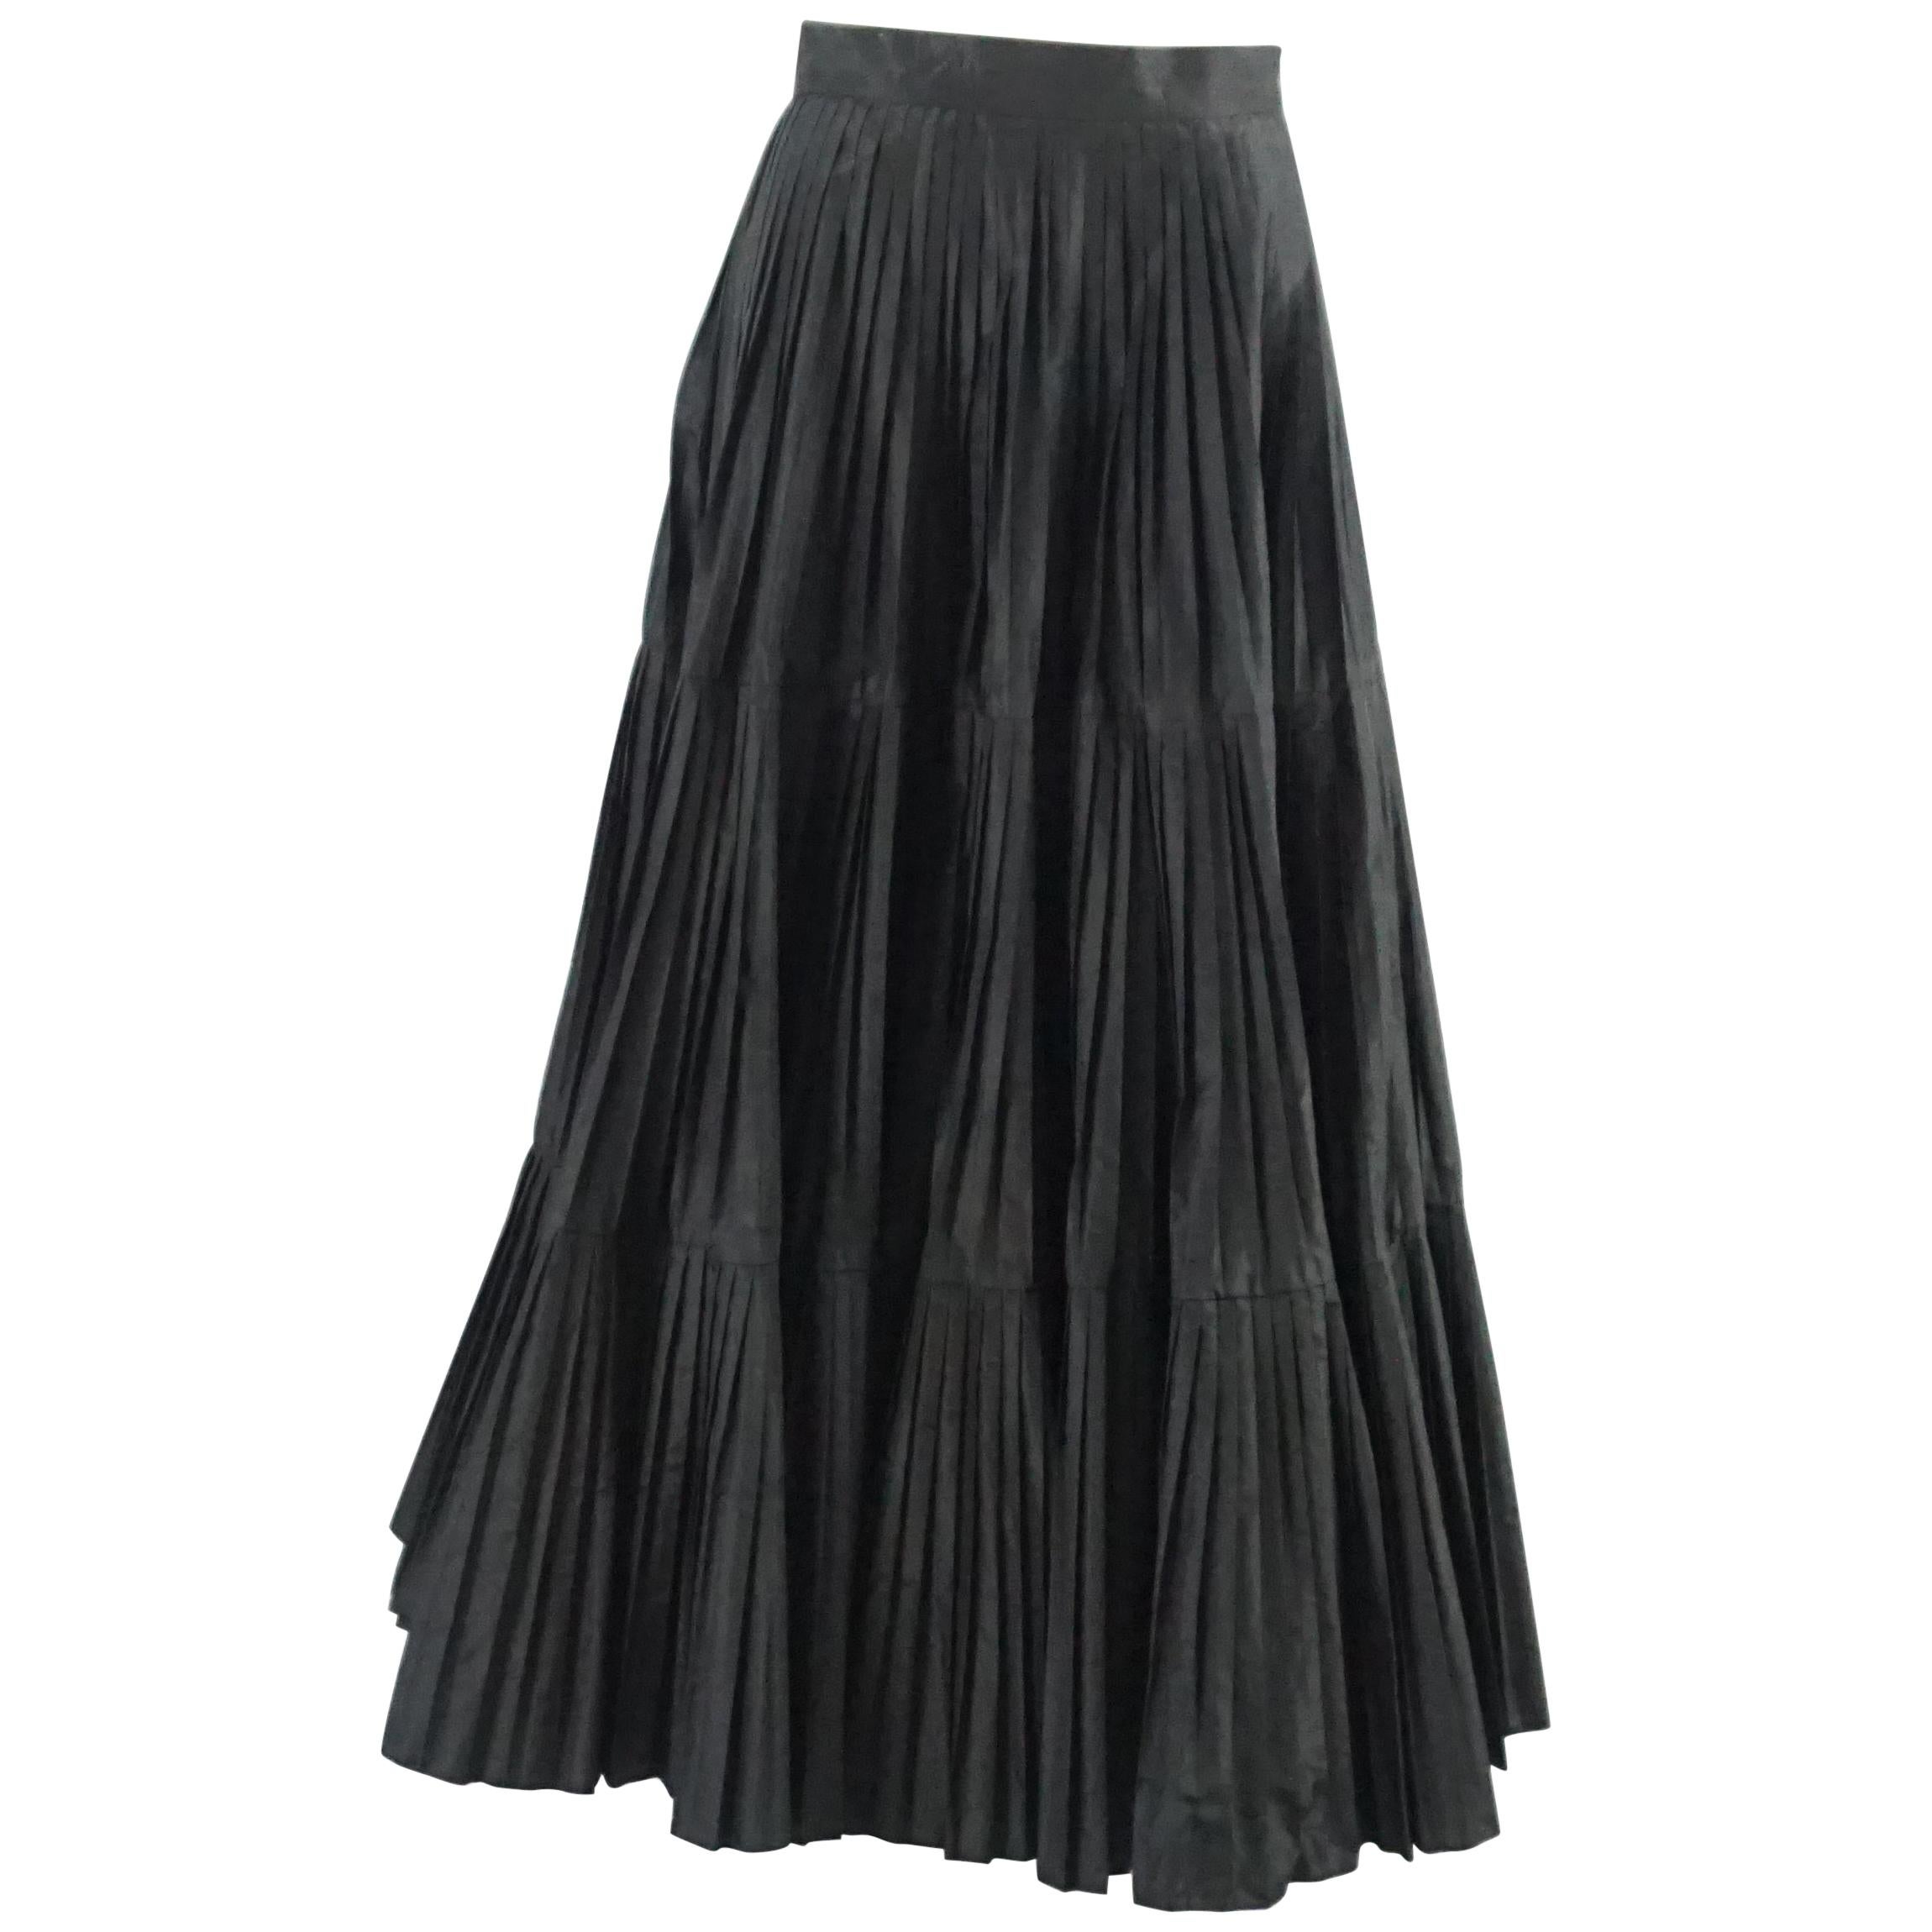 Serge & Real Black Taffeta Pleated Long Skirt - M